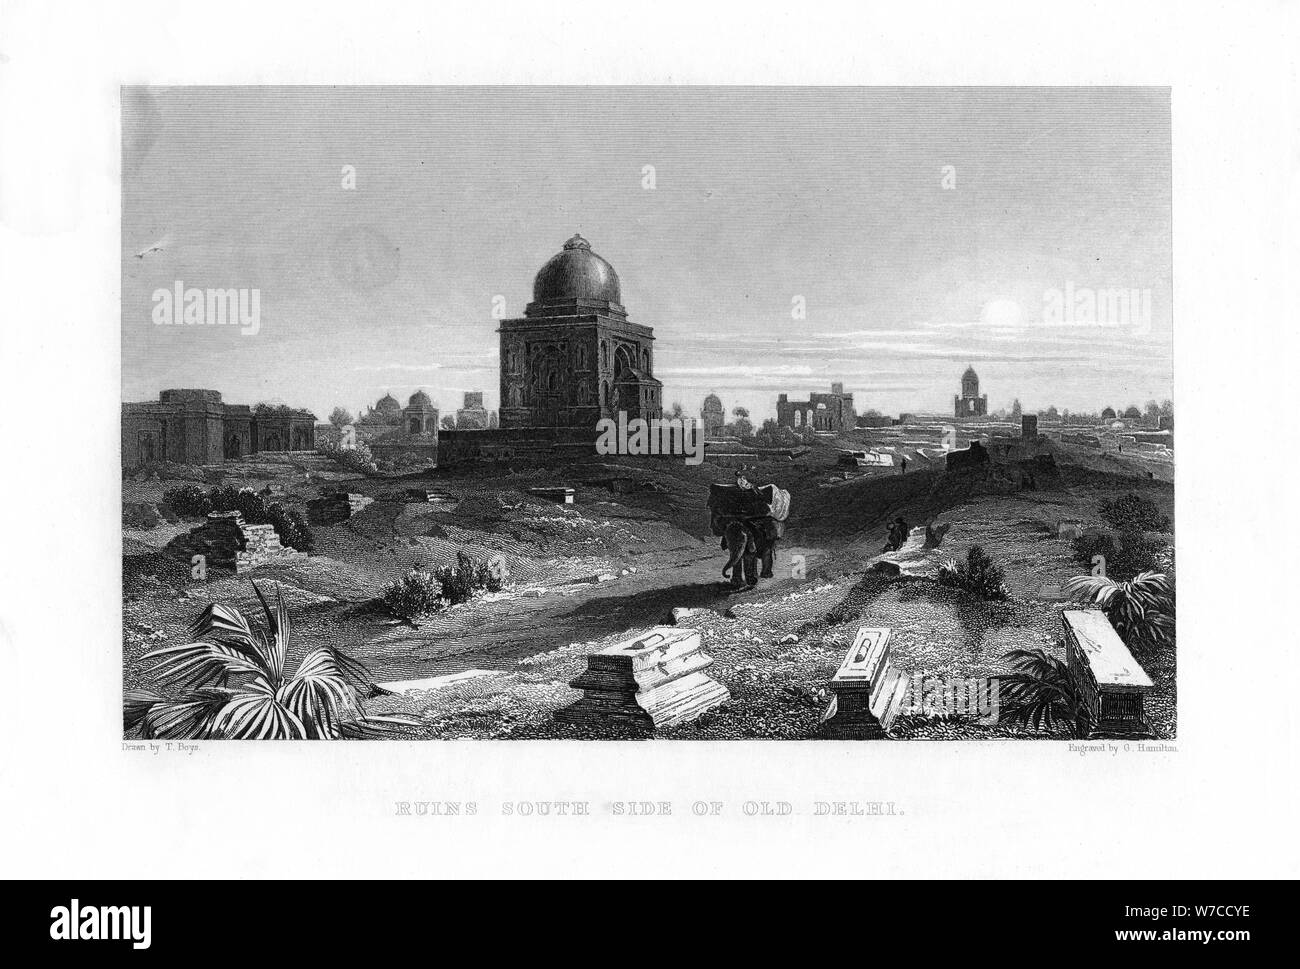 "Rovine del lato sud di Vecchia Delhi, India, XIX secolo.Artista: G Hamilton Foto Stock